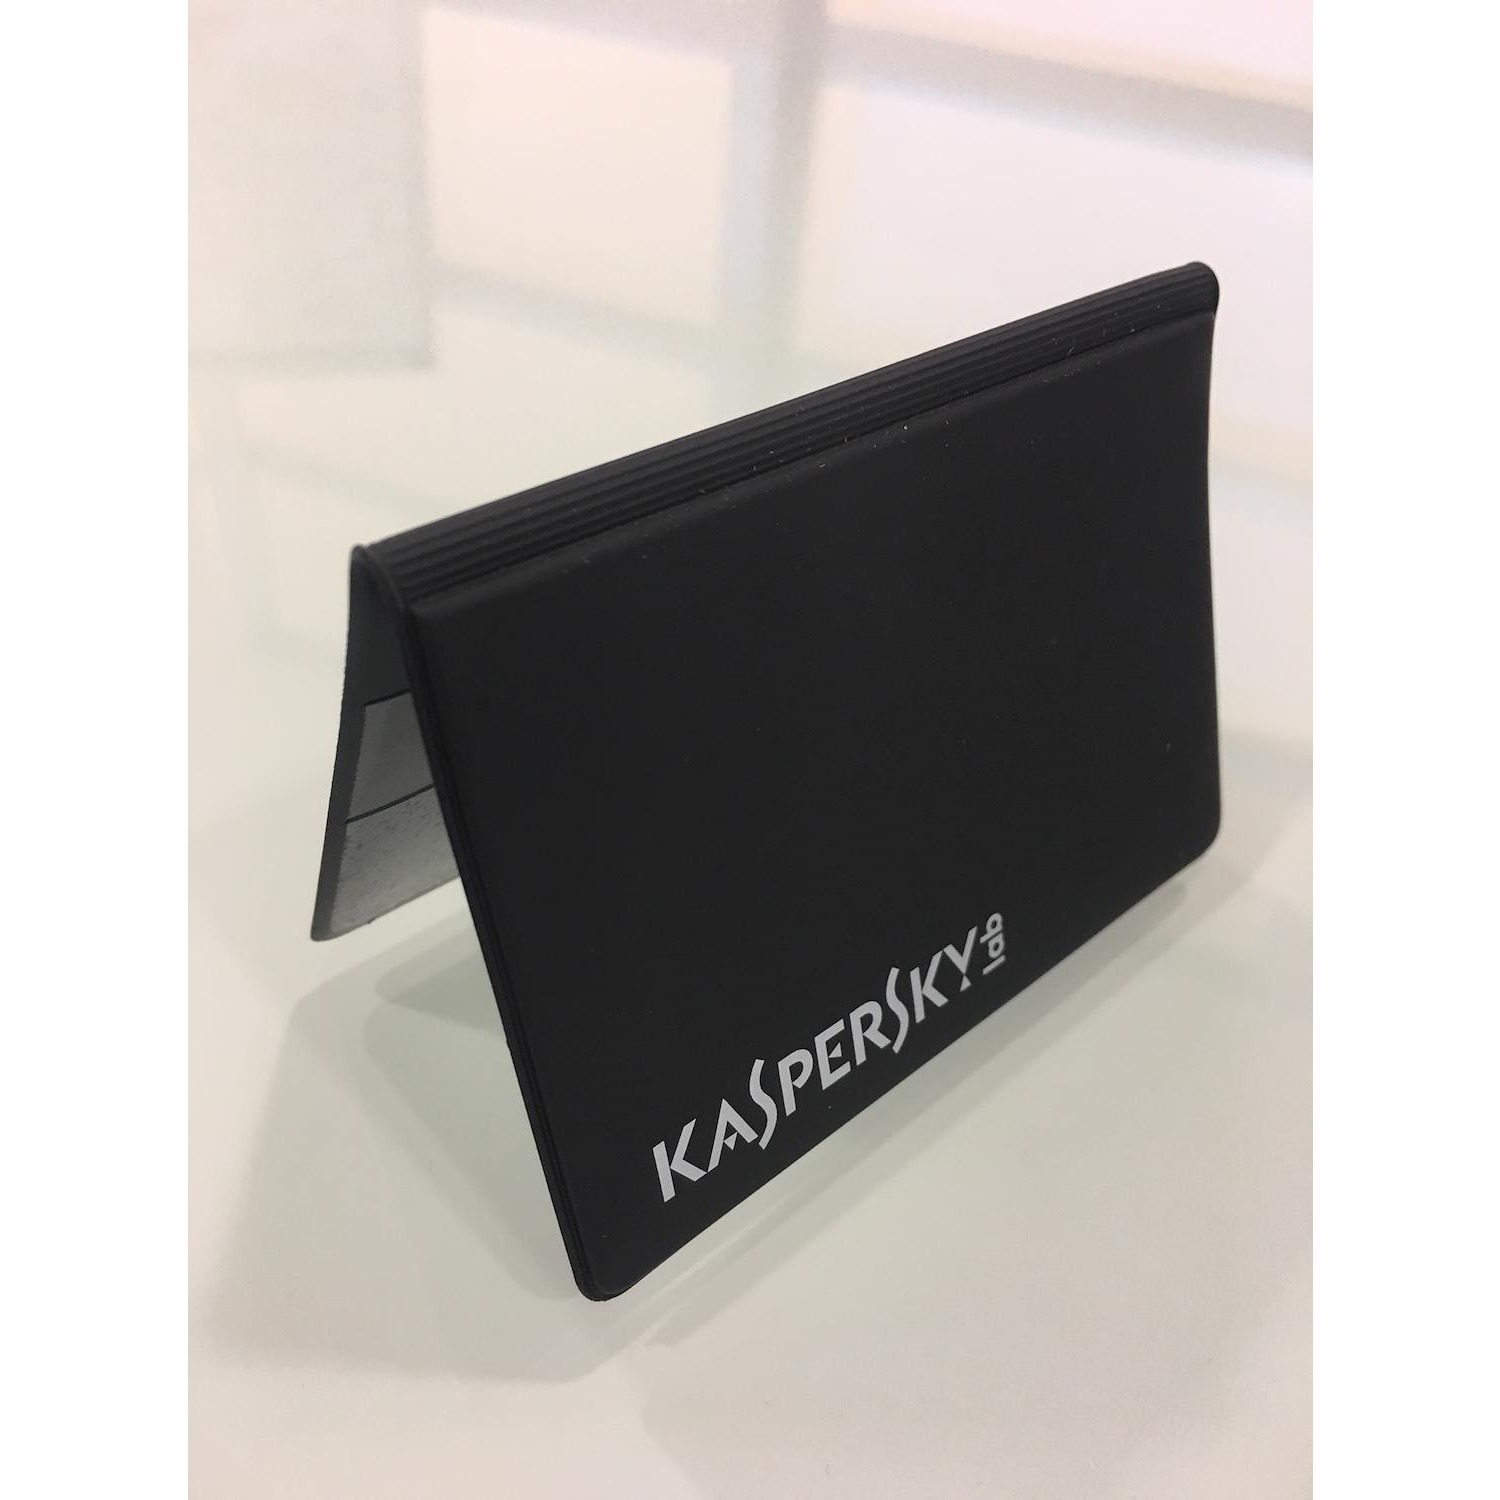 Immagine per Kaspersky card holder porta carte di credito      anti frode da DIMOStore